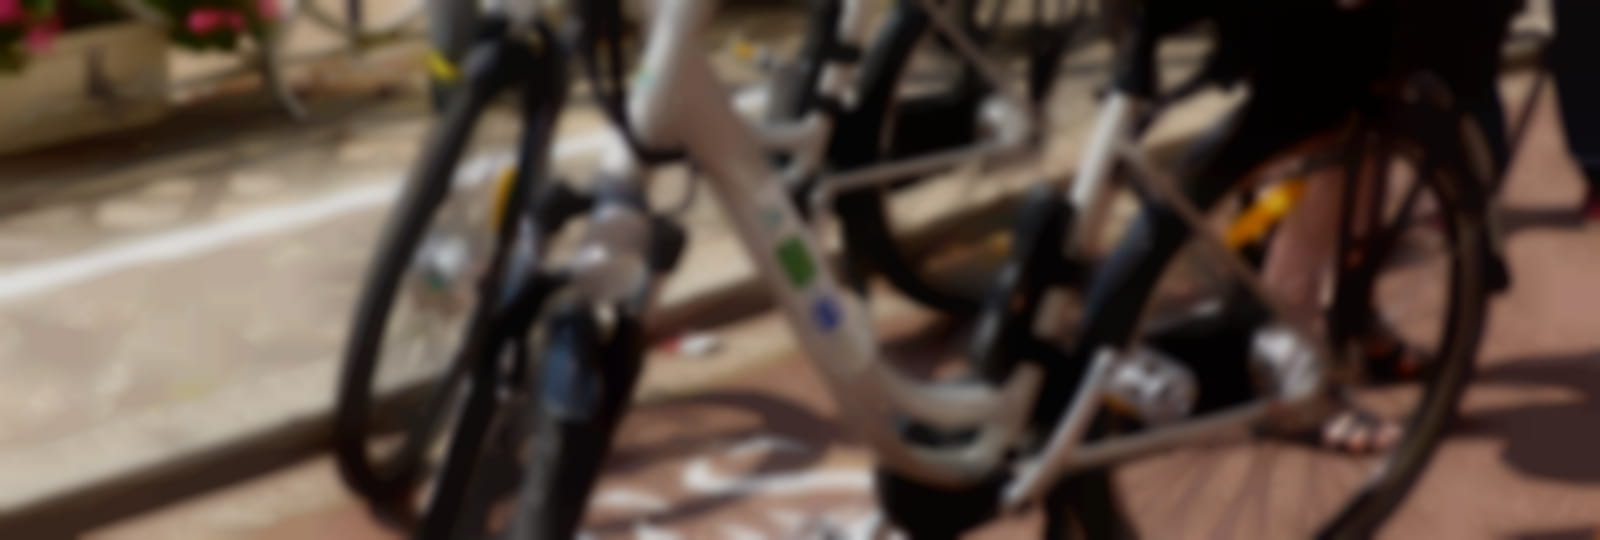 Point de location de vélos à assistance électrique OTC du Perche